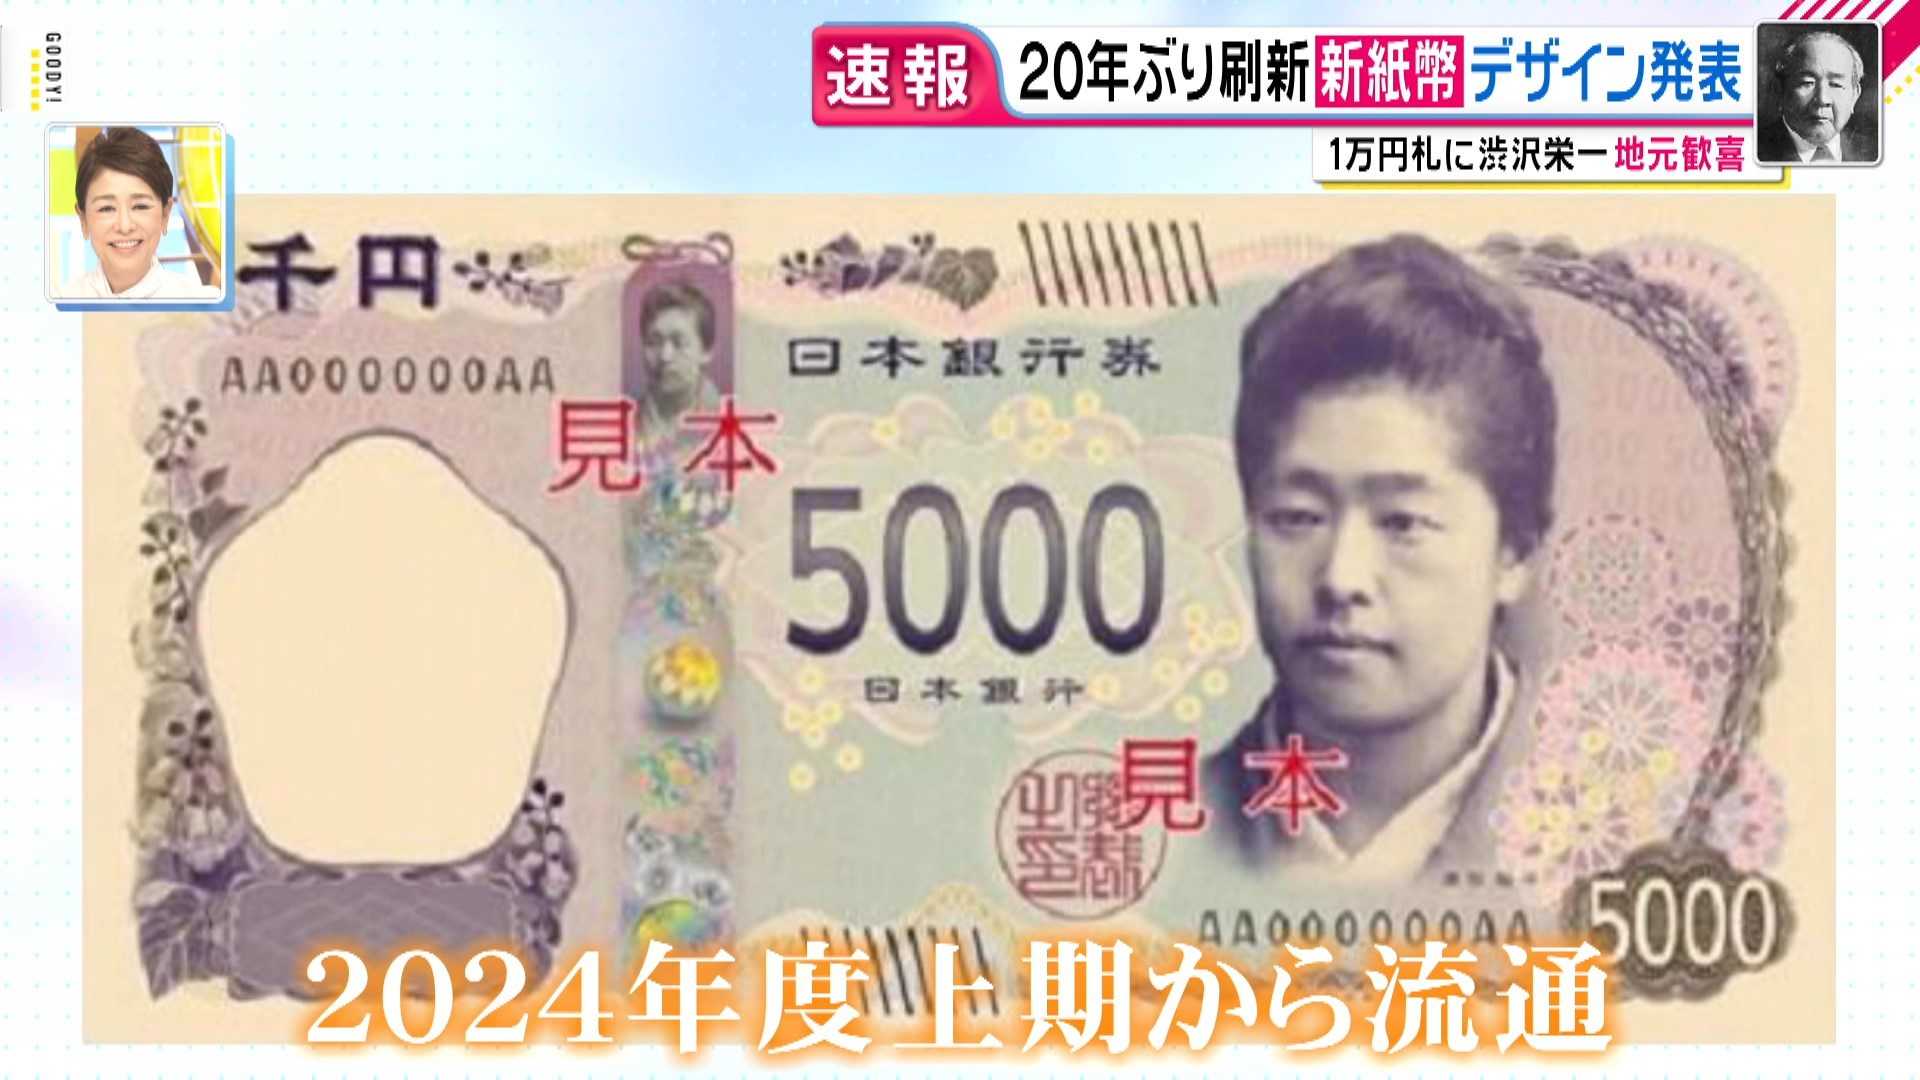 20年ぶりに紙幣刷新へ 一万円札の新しい顔 渋沢栄一は過去に 落選 し